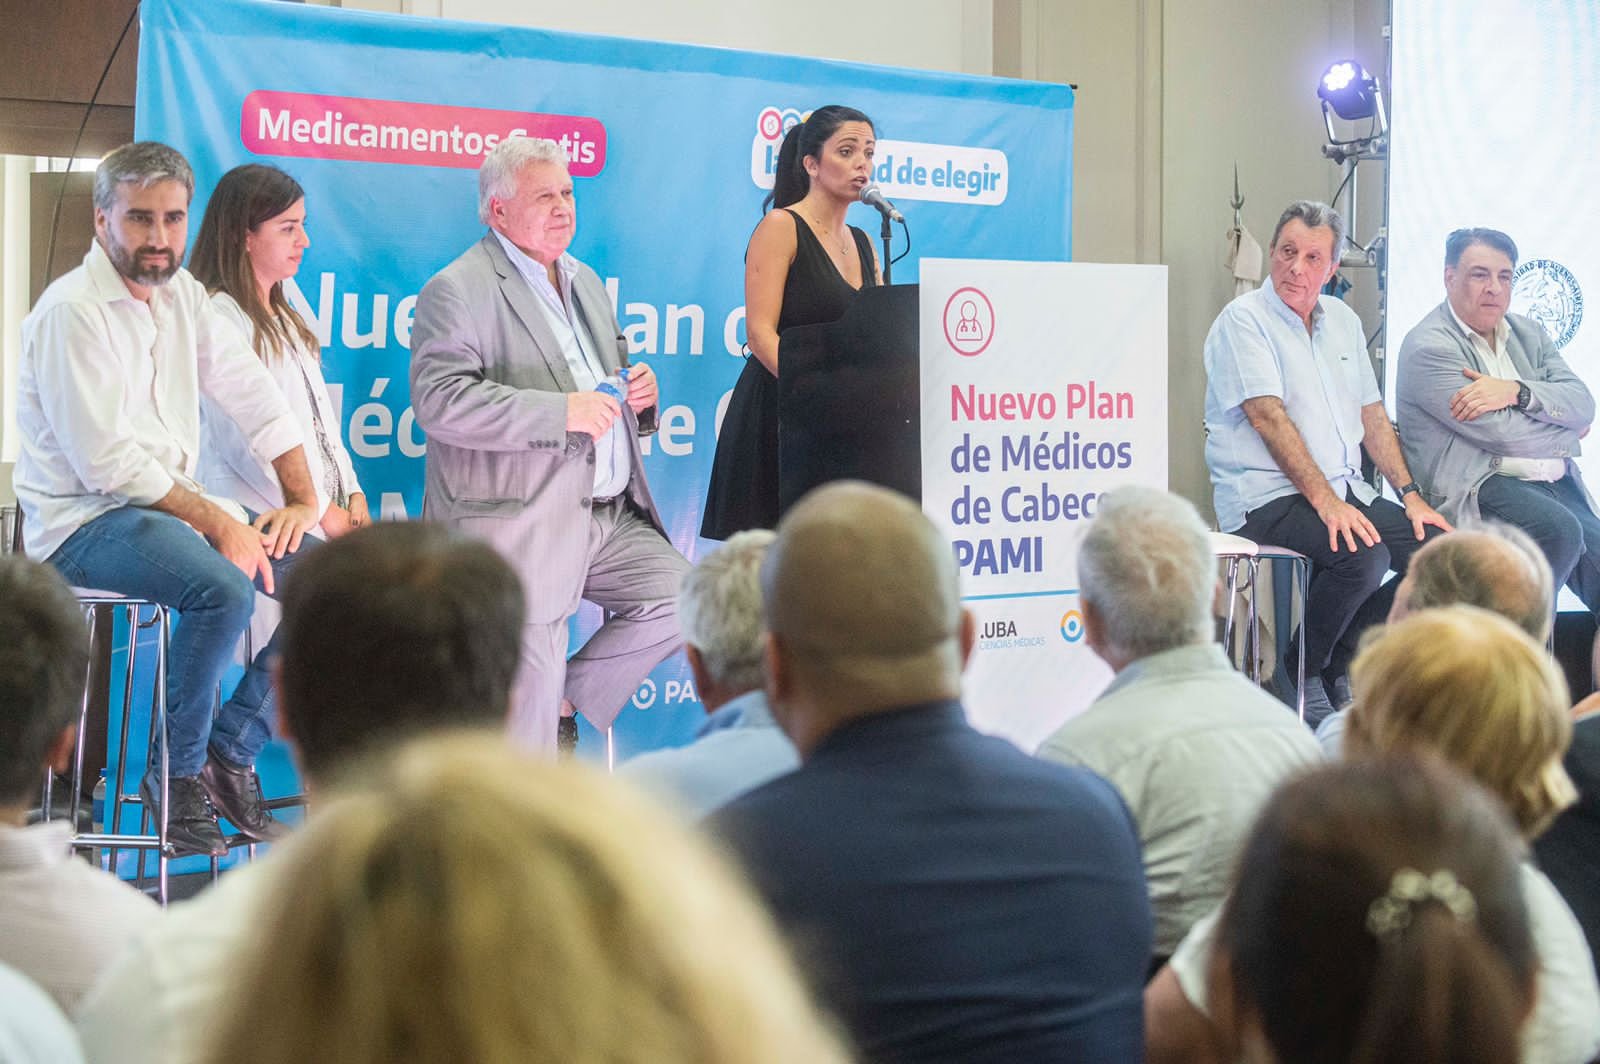 Luana Volnovich: «Lanzamos el nuevo plan de médicos de cabecera PAMI para una atención más rápida y con menos trámites»